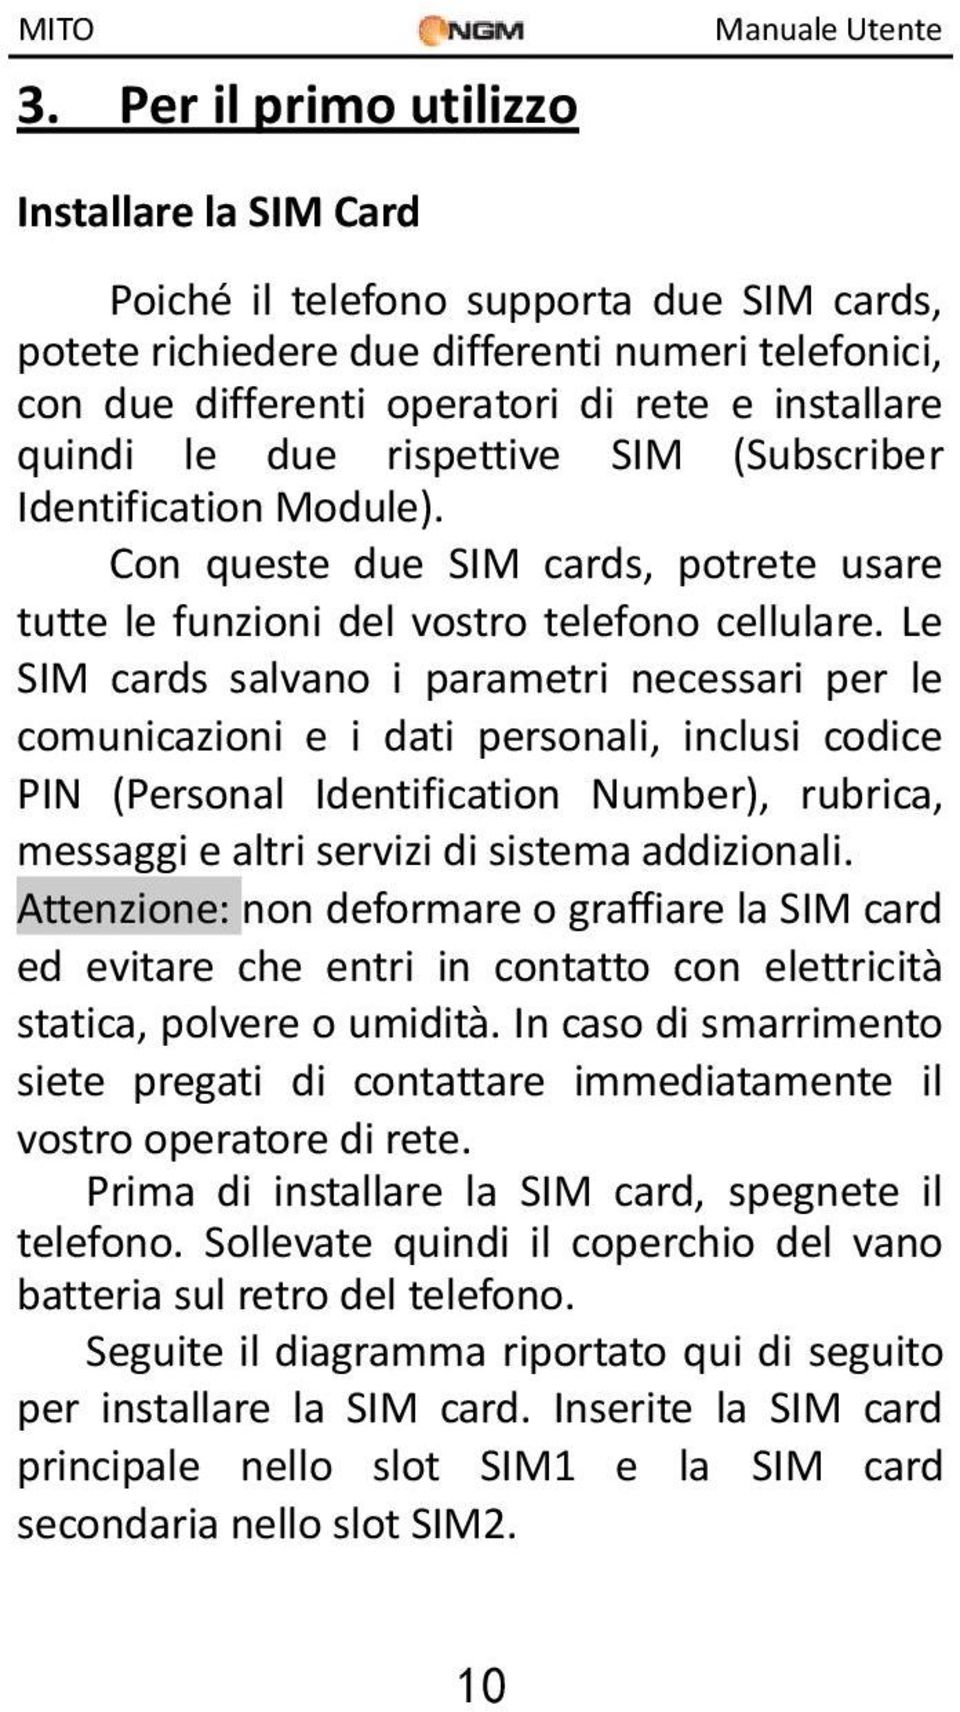 Le SIM cards salvano i parametri necessari per le comunicazioni e i dati personali, inclusi codice PIN (Personal Identification Number), rubrica, messaggi e altri servizi di sistema addizionali.